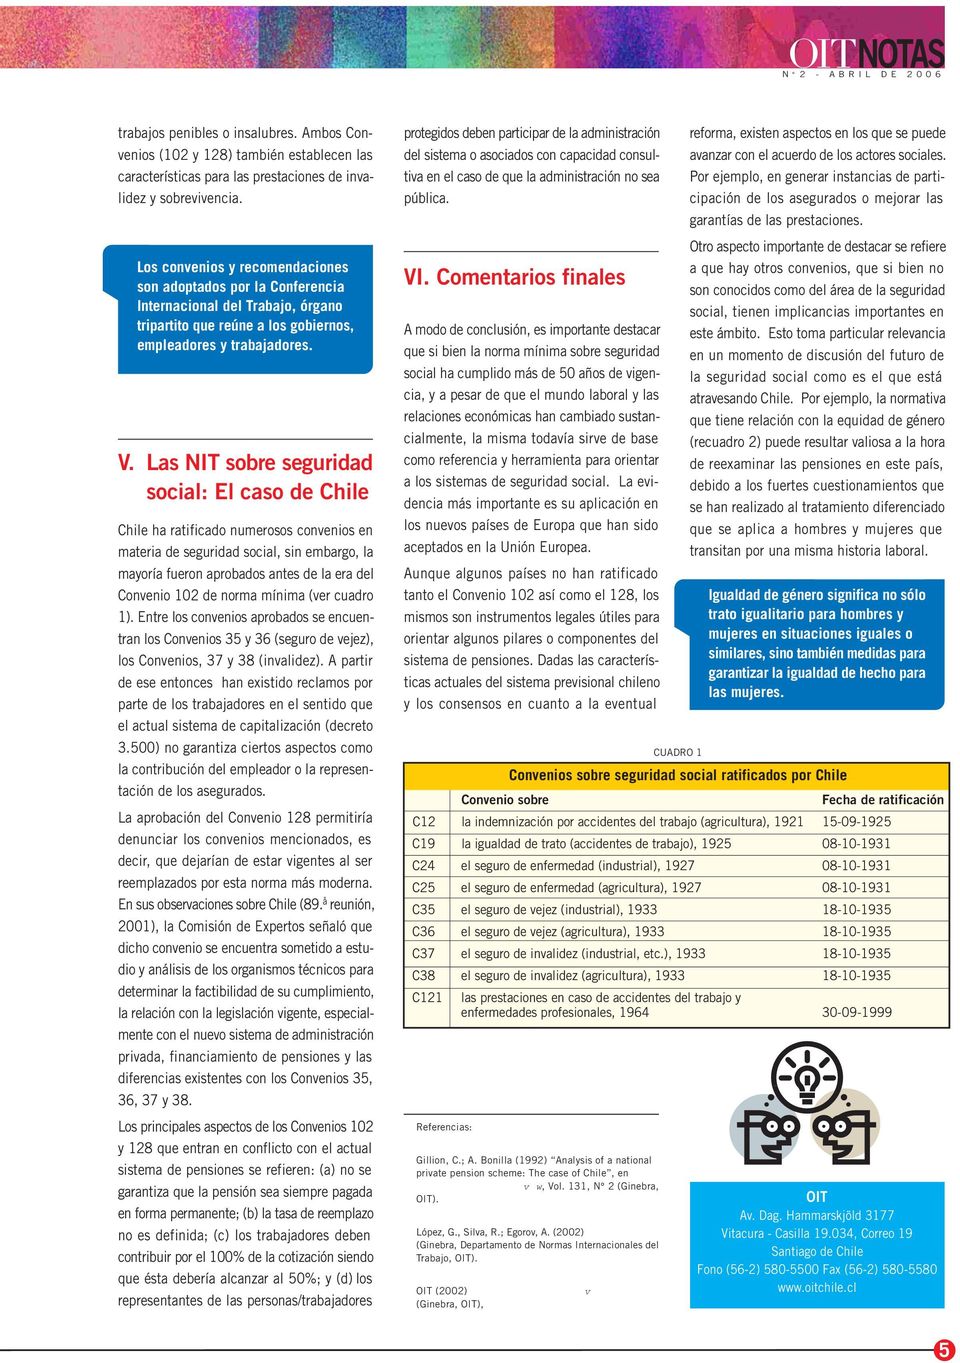 Las NIT sobre seguridad social: El caso de Chile Chile ha ratificado numerosos convenios en materia de seguridad social, sin embargo, la mayoría fueron aprobados antes de la era del Convenio 102 de